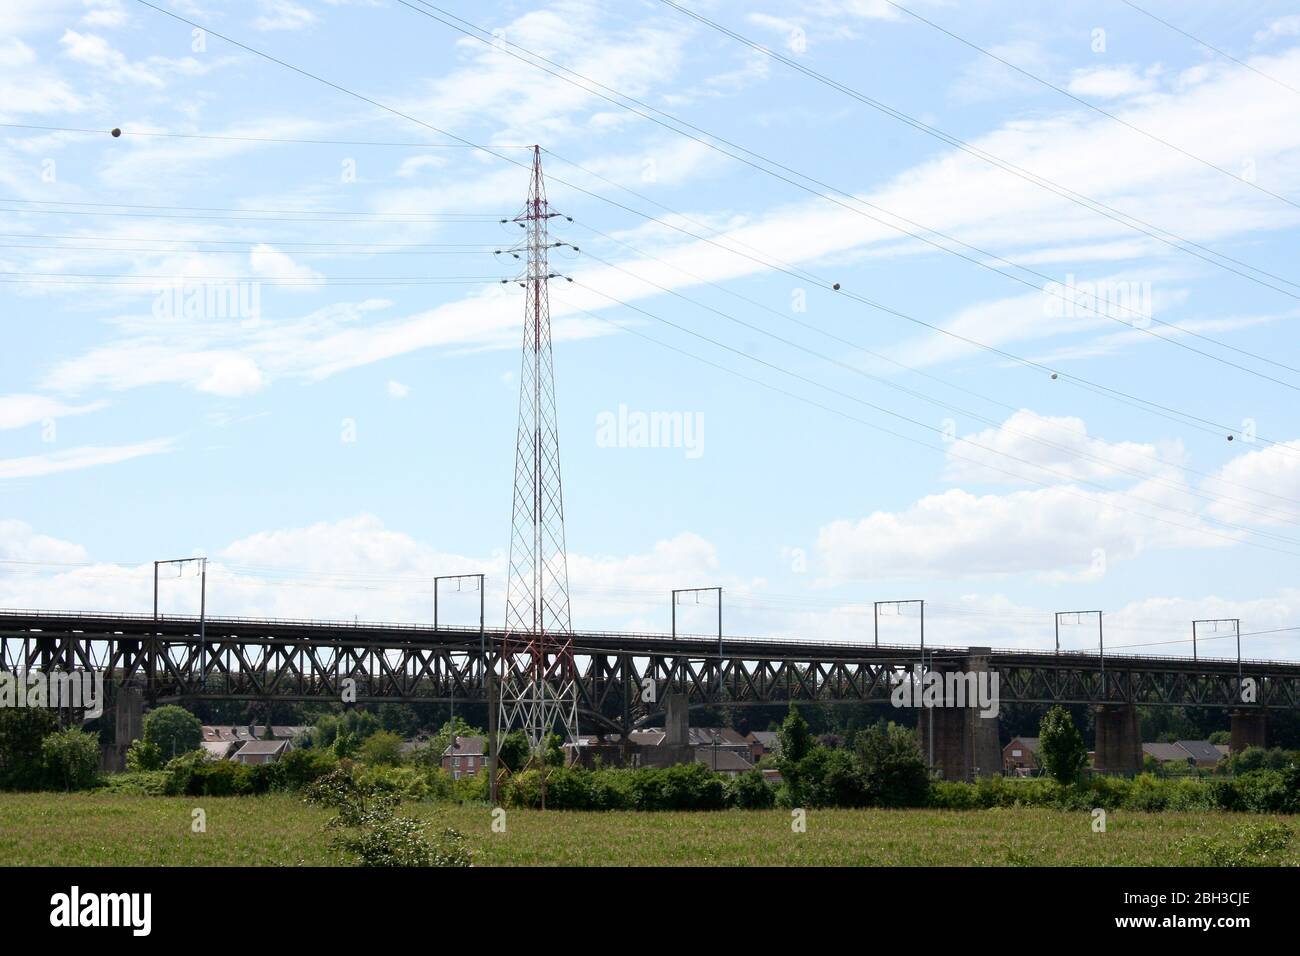 Large steel railway bridge, blue sky in the background Große stählerne Eisenbahnbrücke, blauer Himmel im Hintergrund Stock Photo